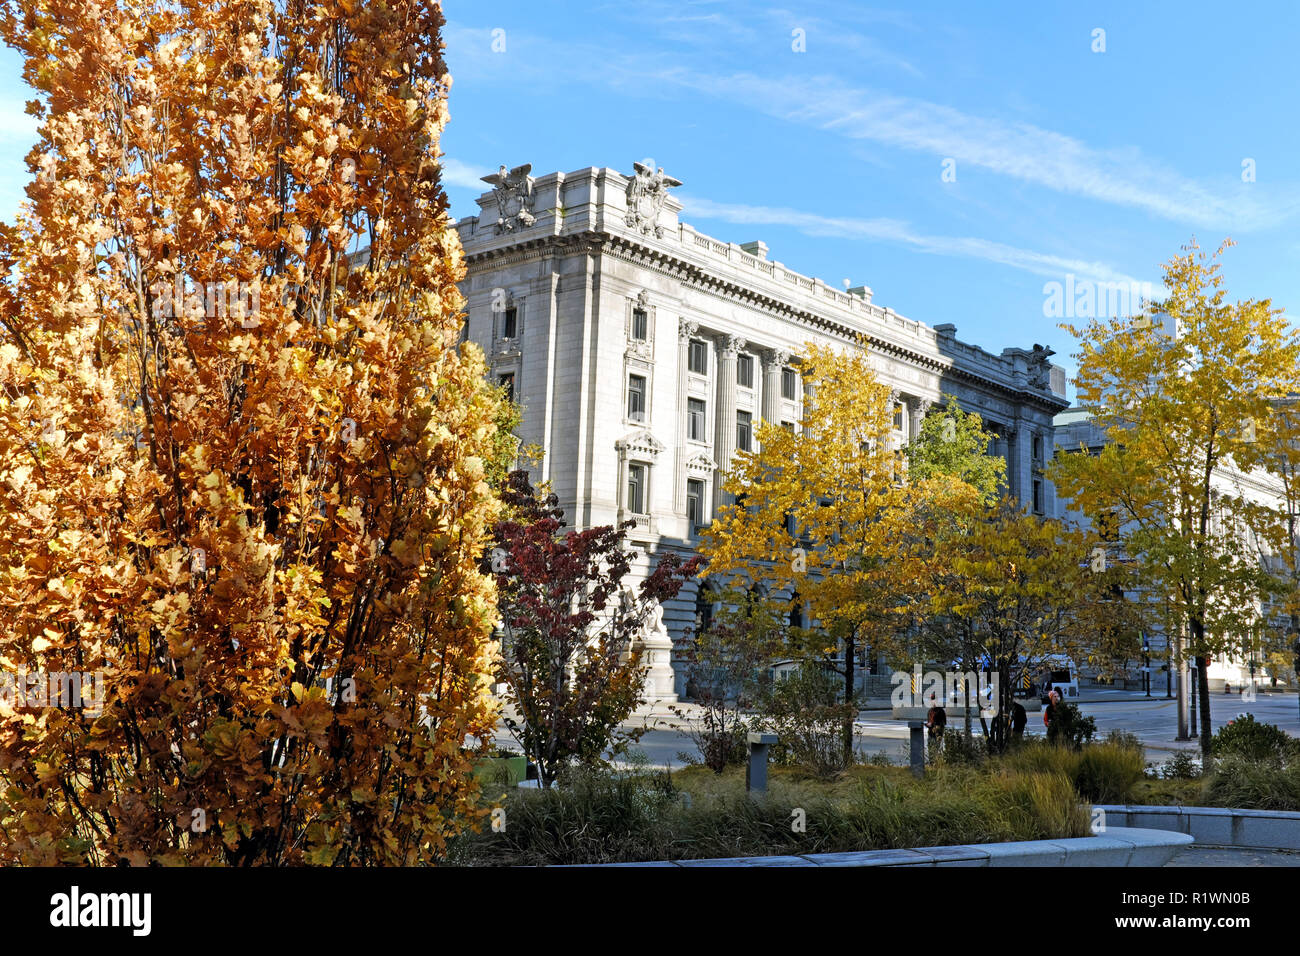 Durch die Innenstadt von Cleveland Public Square Herbst Laub gesehen, in der südwestlichen Ecke des historischen Metzenbaum US-Gericht angesehen wird. Stockfoto